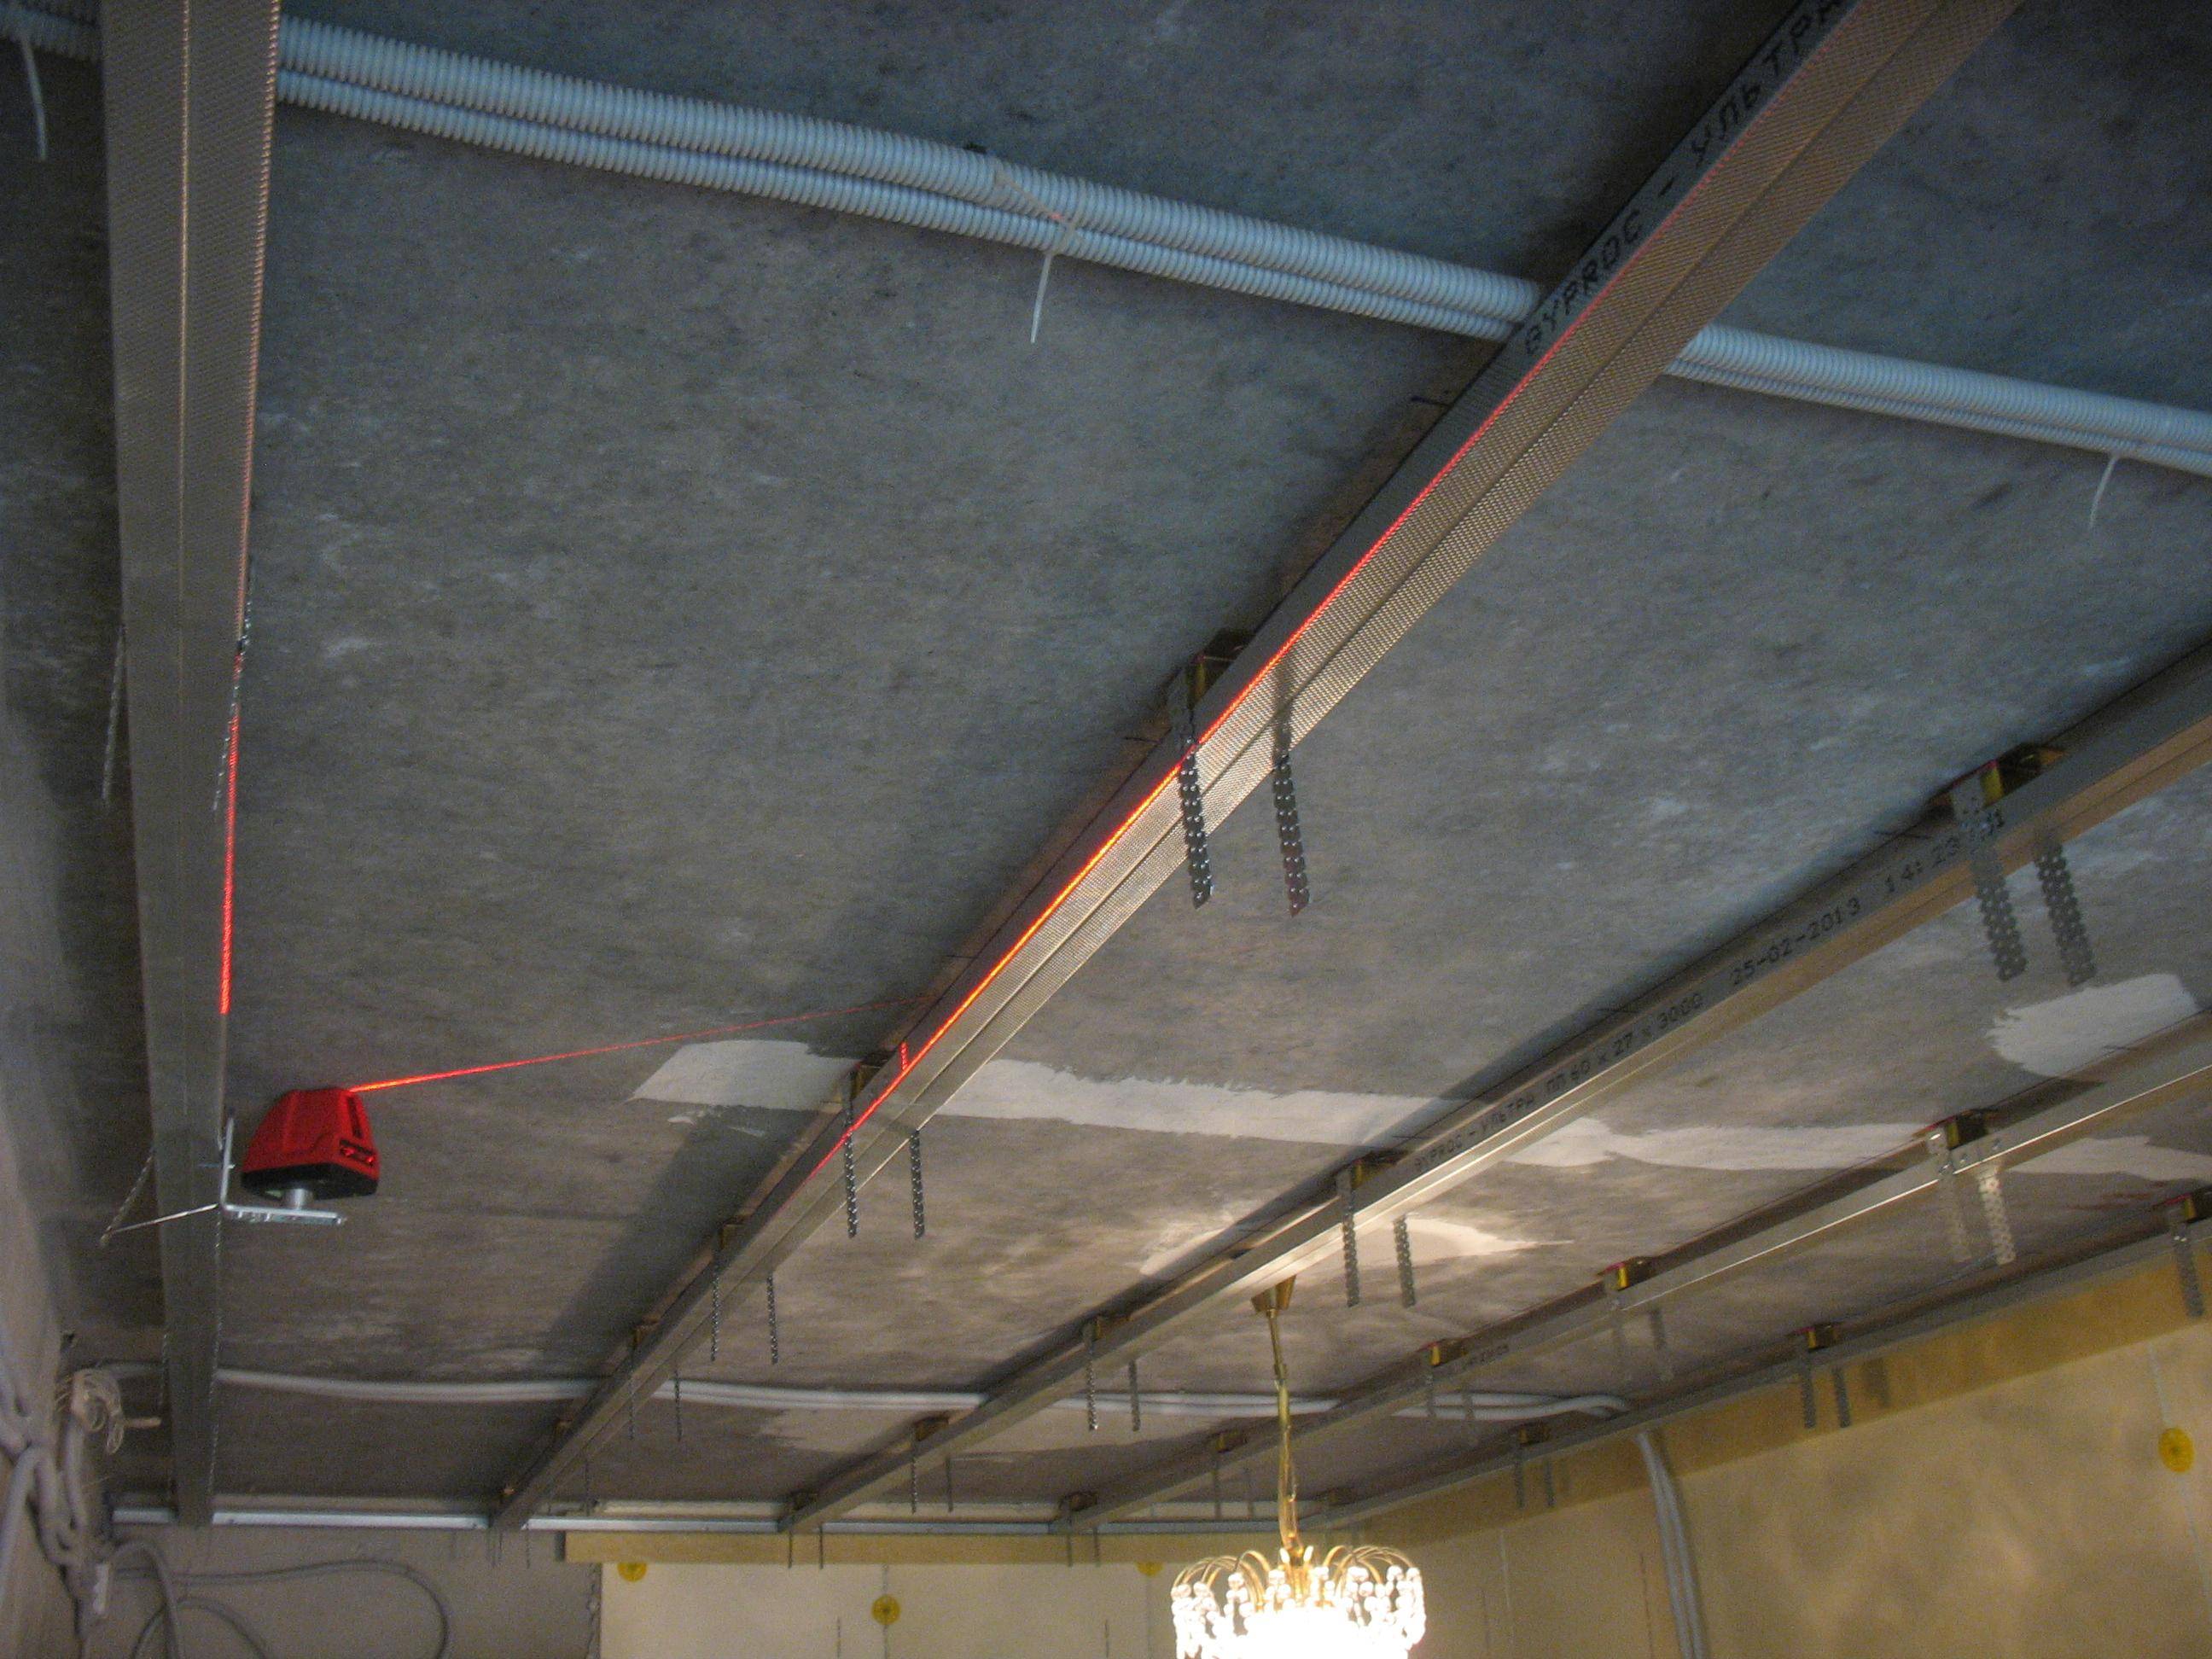 Шумоизоляция потолка в квартире: современные материалы